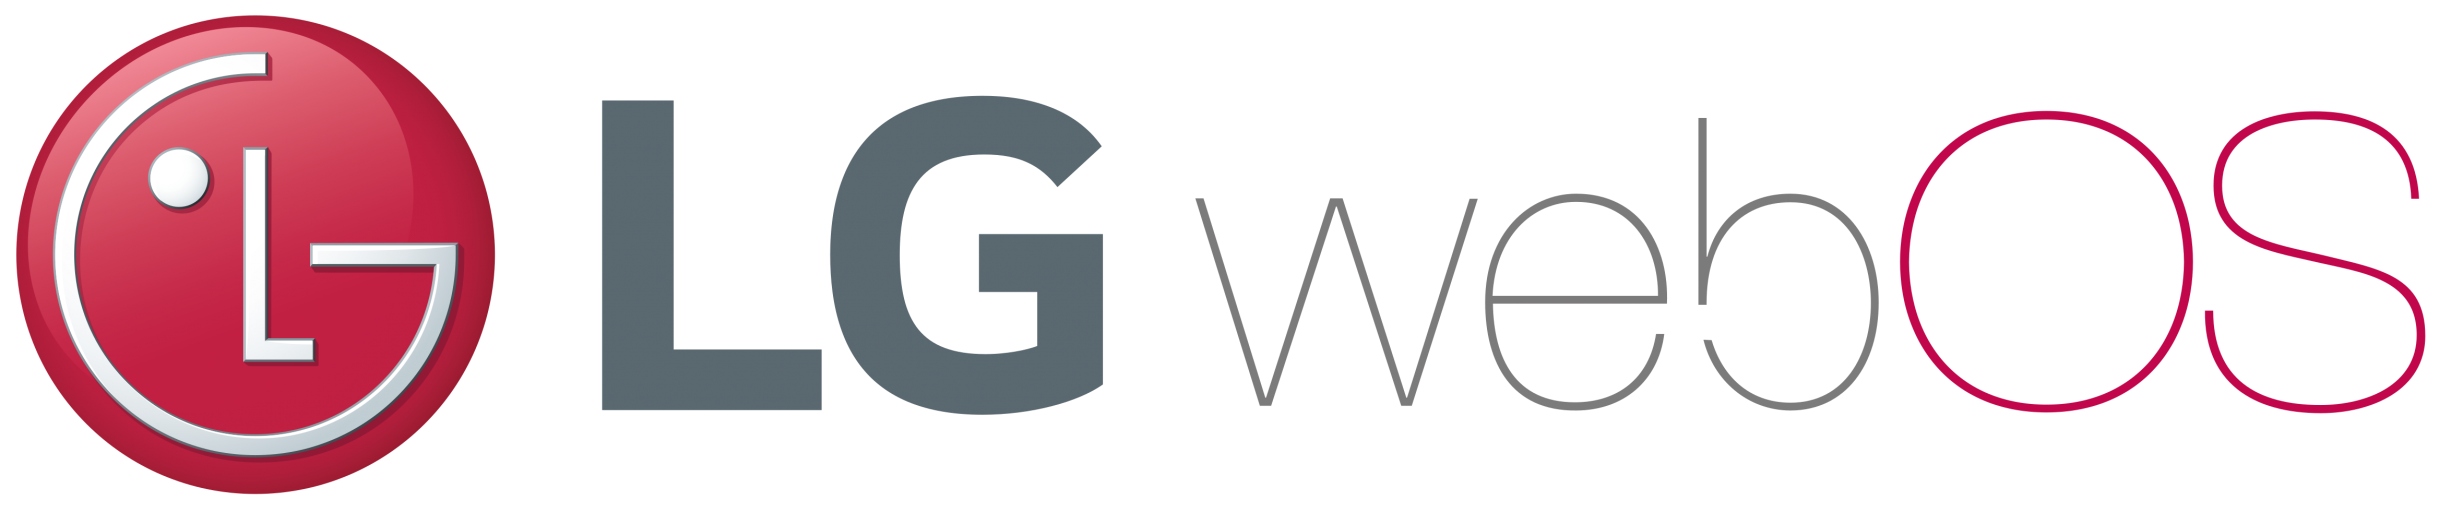 WEBOS логотип. Логотип LG смарт ТВ. LG Smart TV прозрачный логотип. LG телевизоры лого. Ос телевизора lg